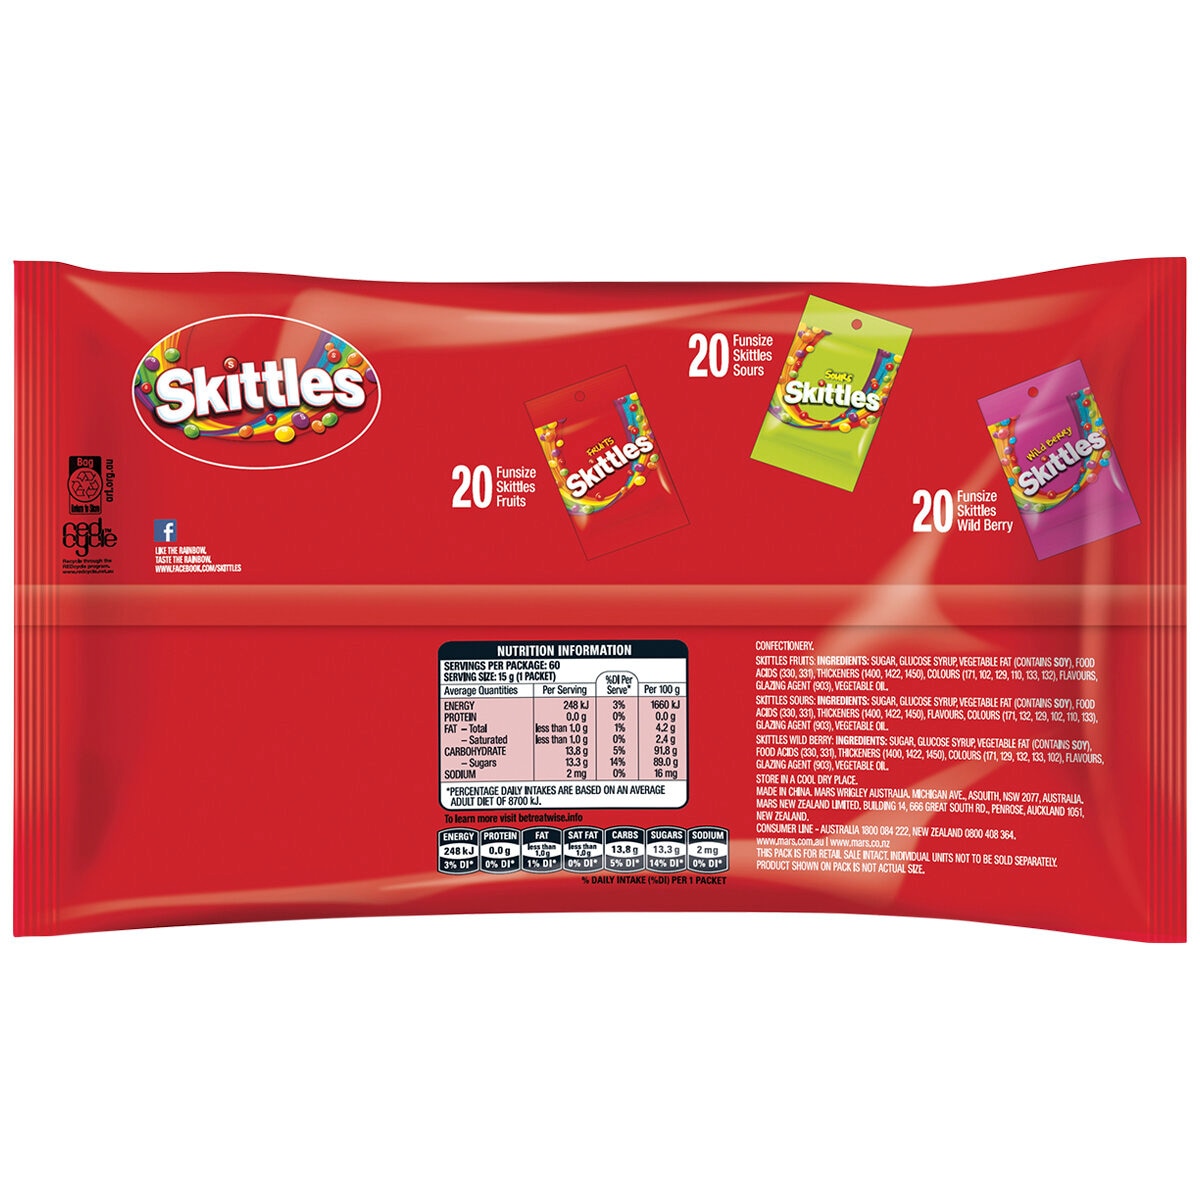 Skittles Variety 60 pack 900g